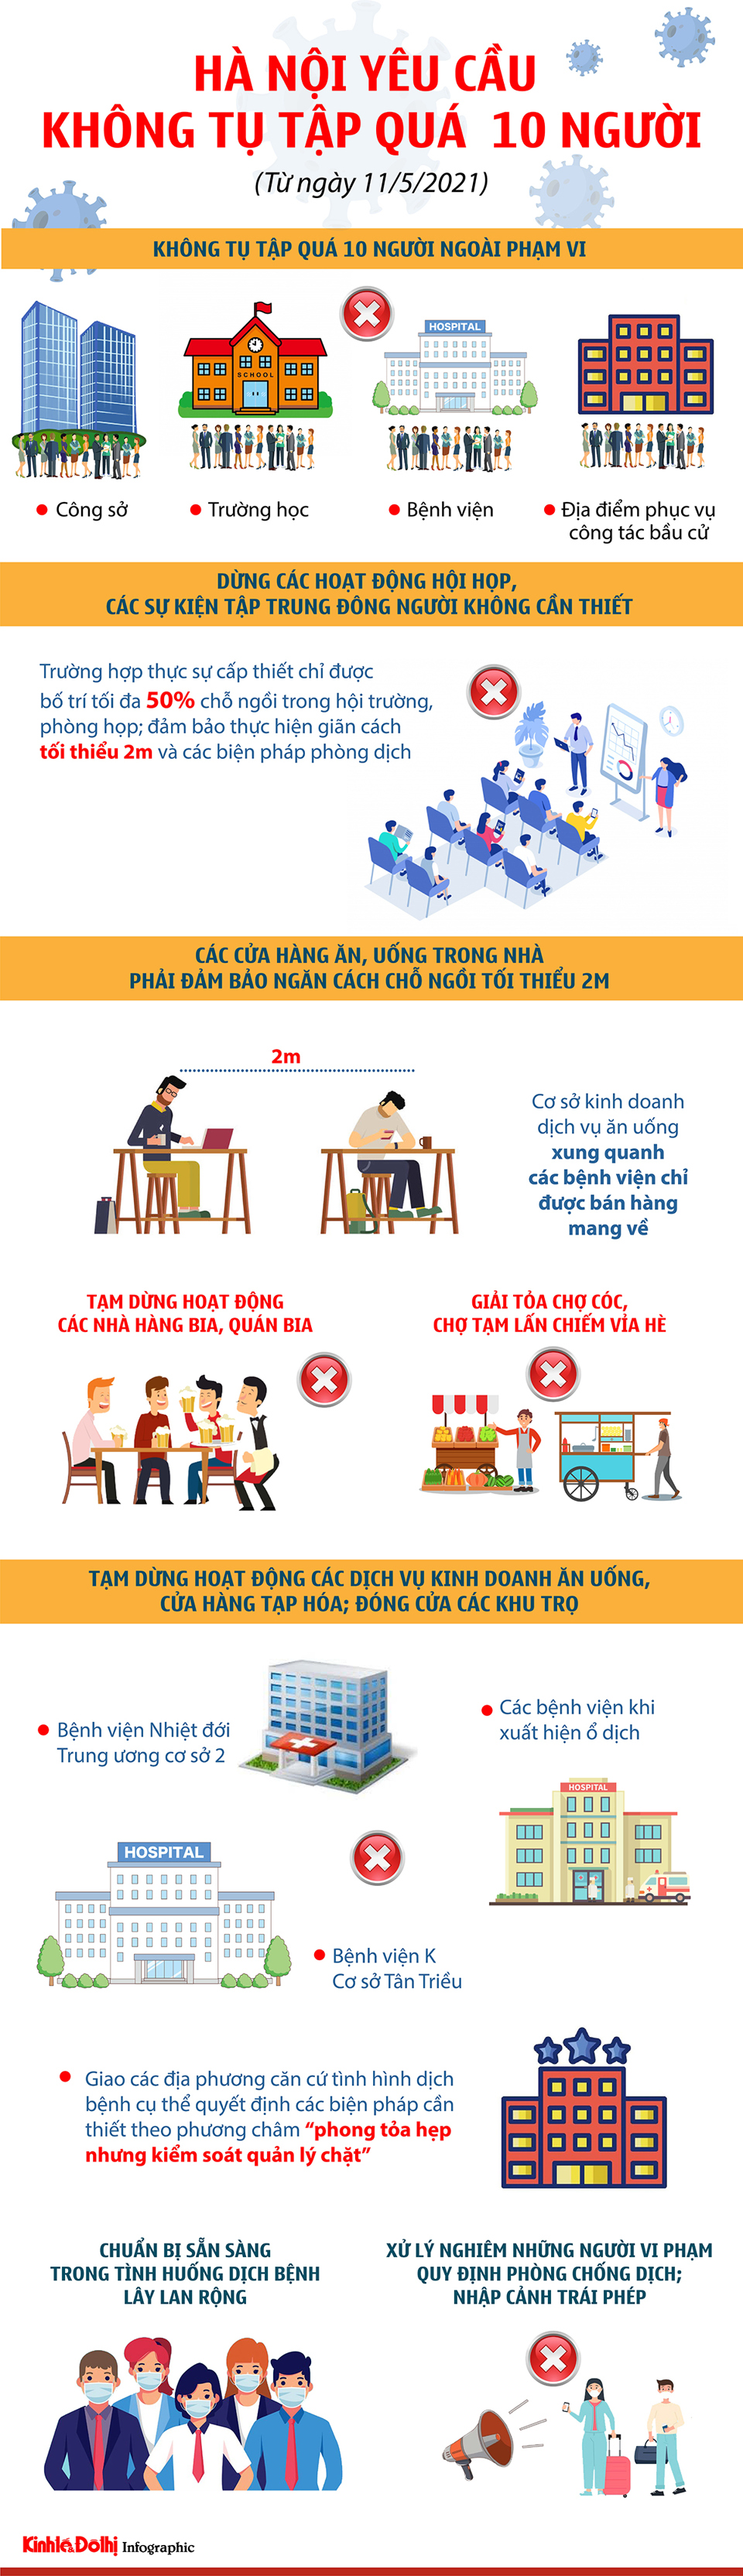 [Infographic] Hà Nội yêu cầu không tụ tập quá 10 người - Ảnh 1